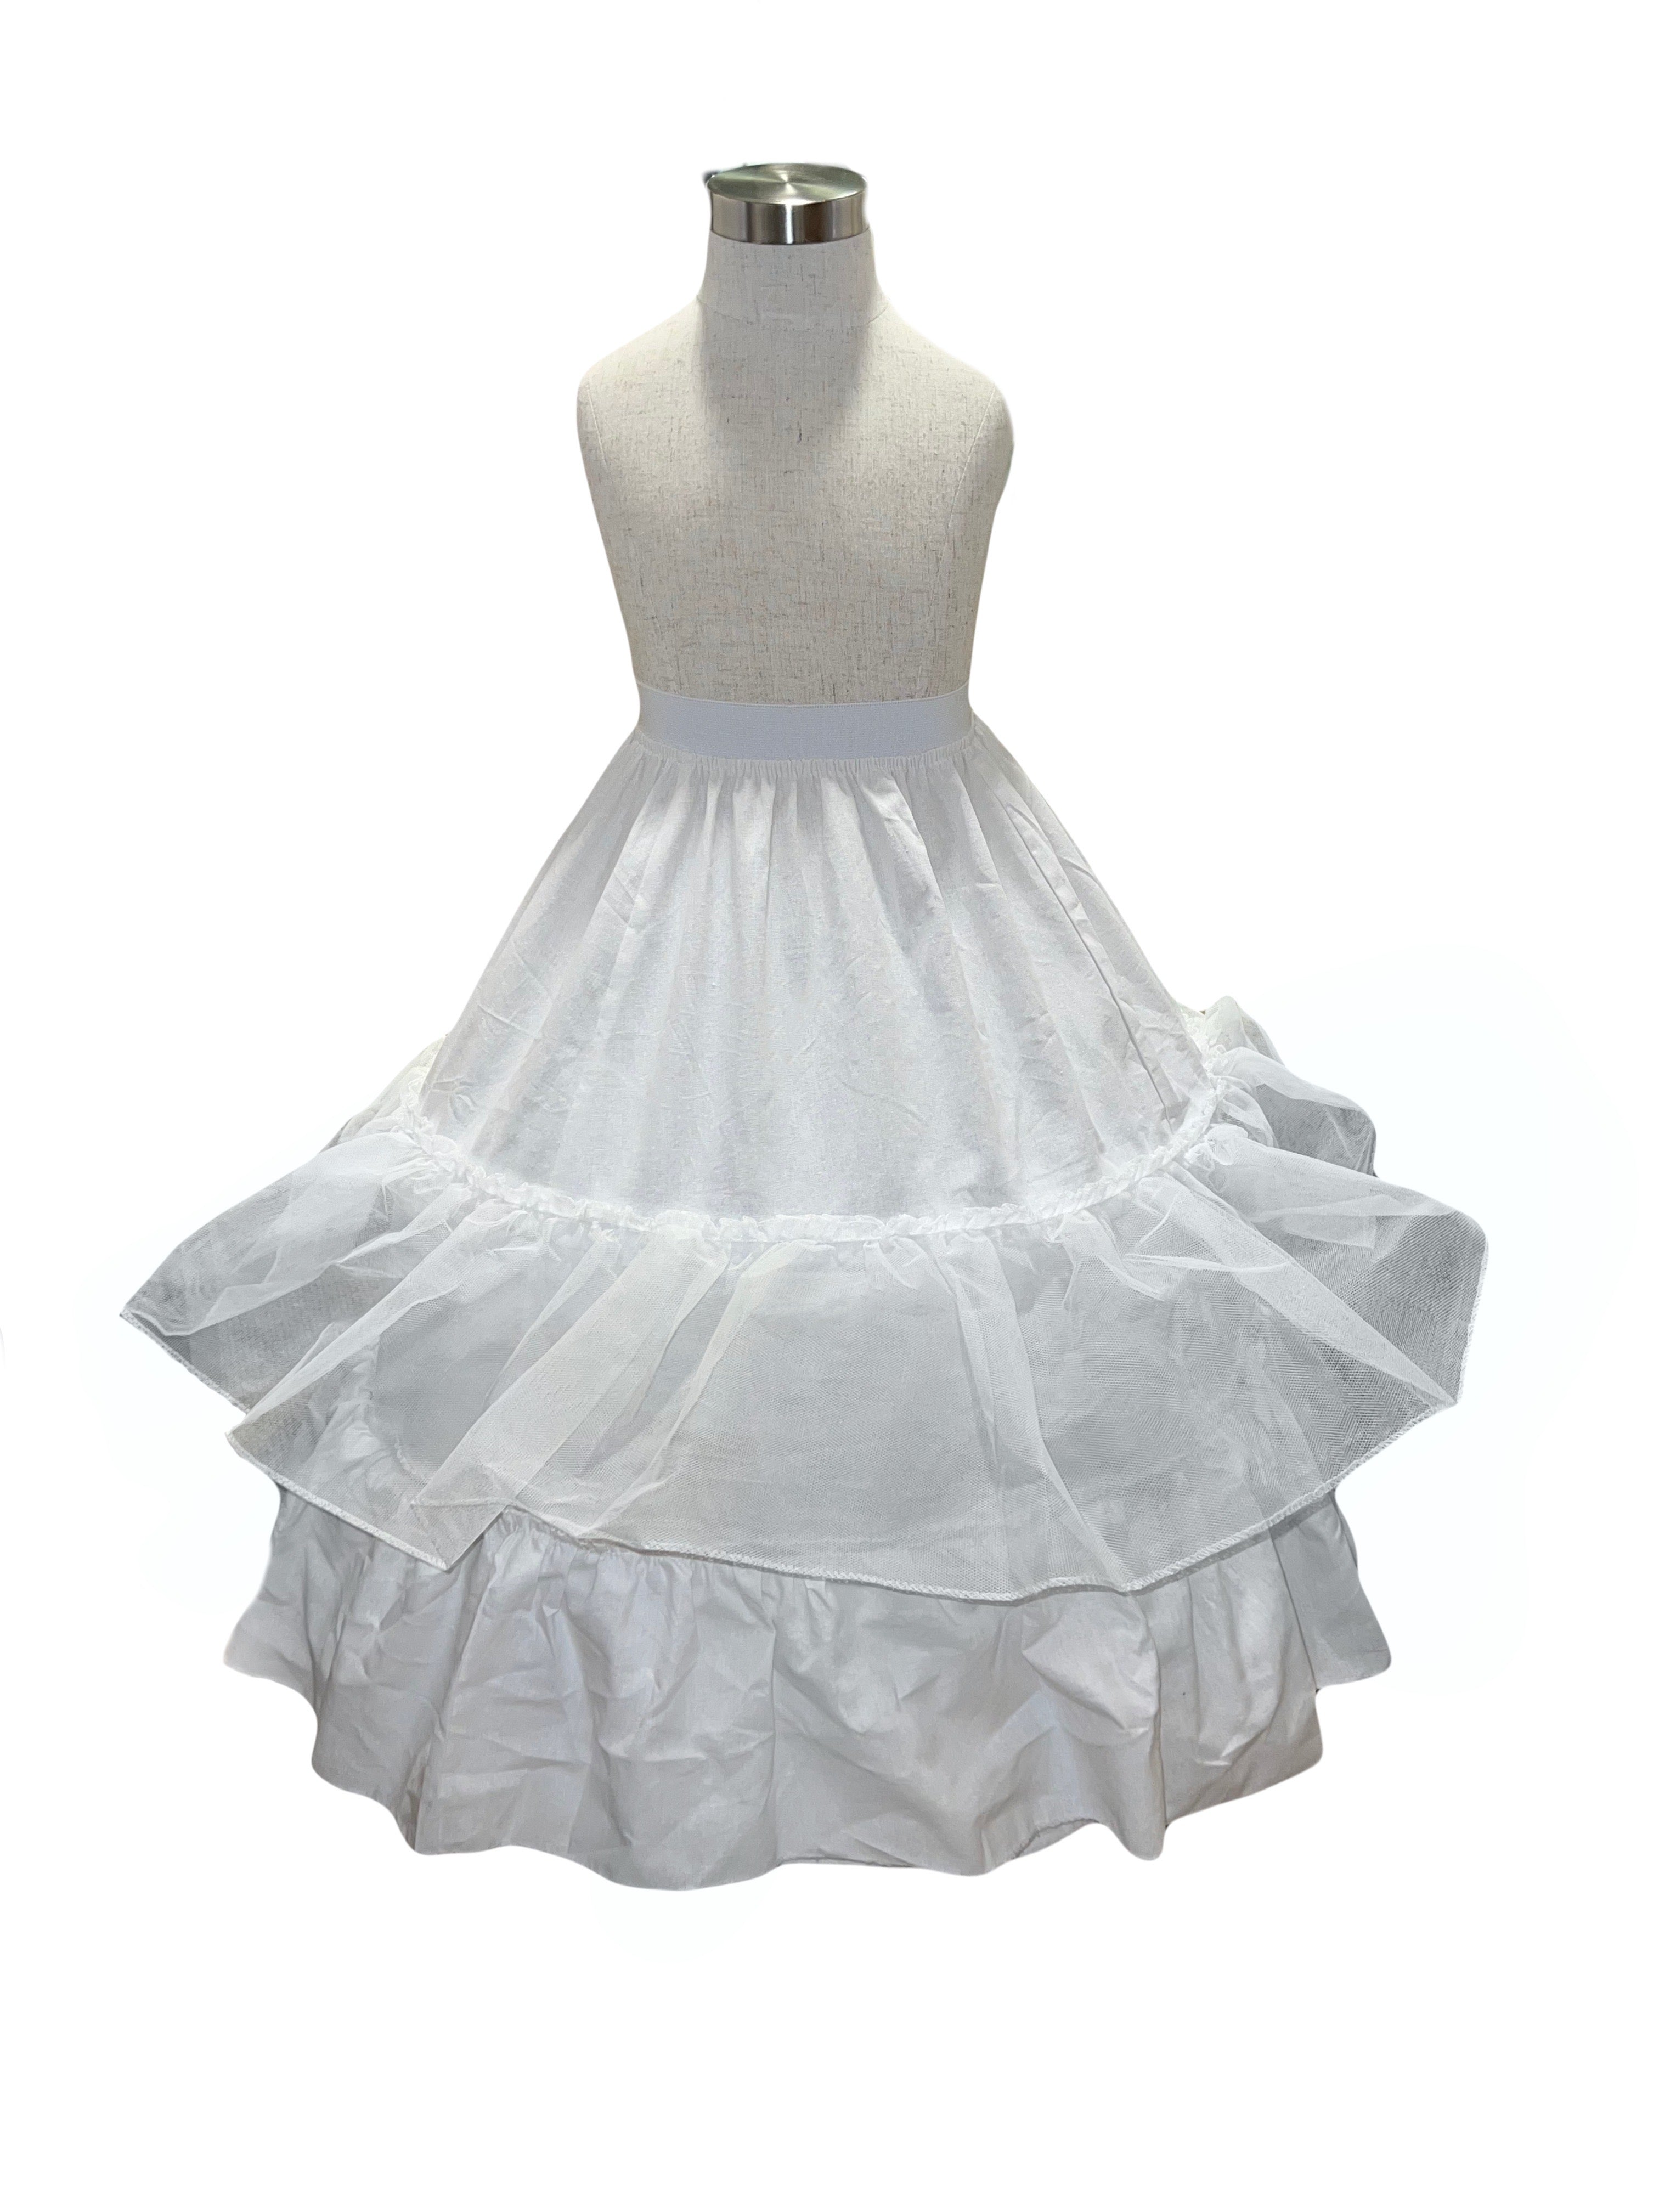 White Petti Skirt